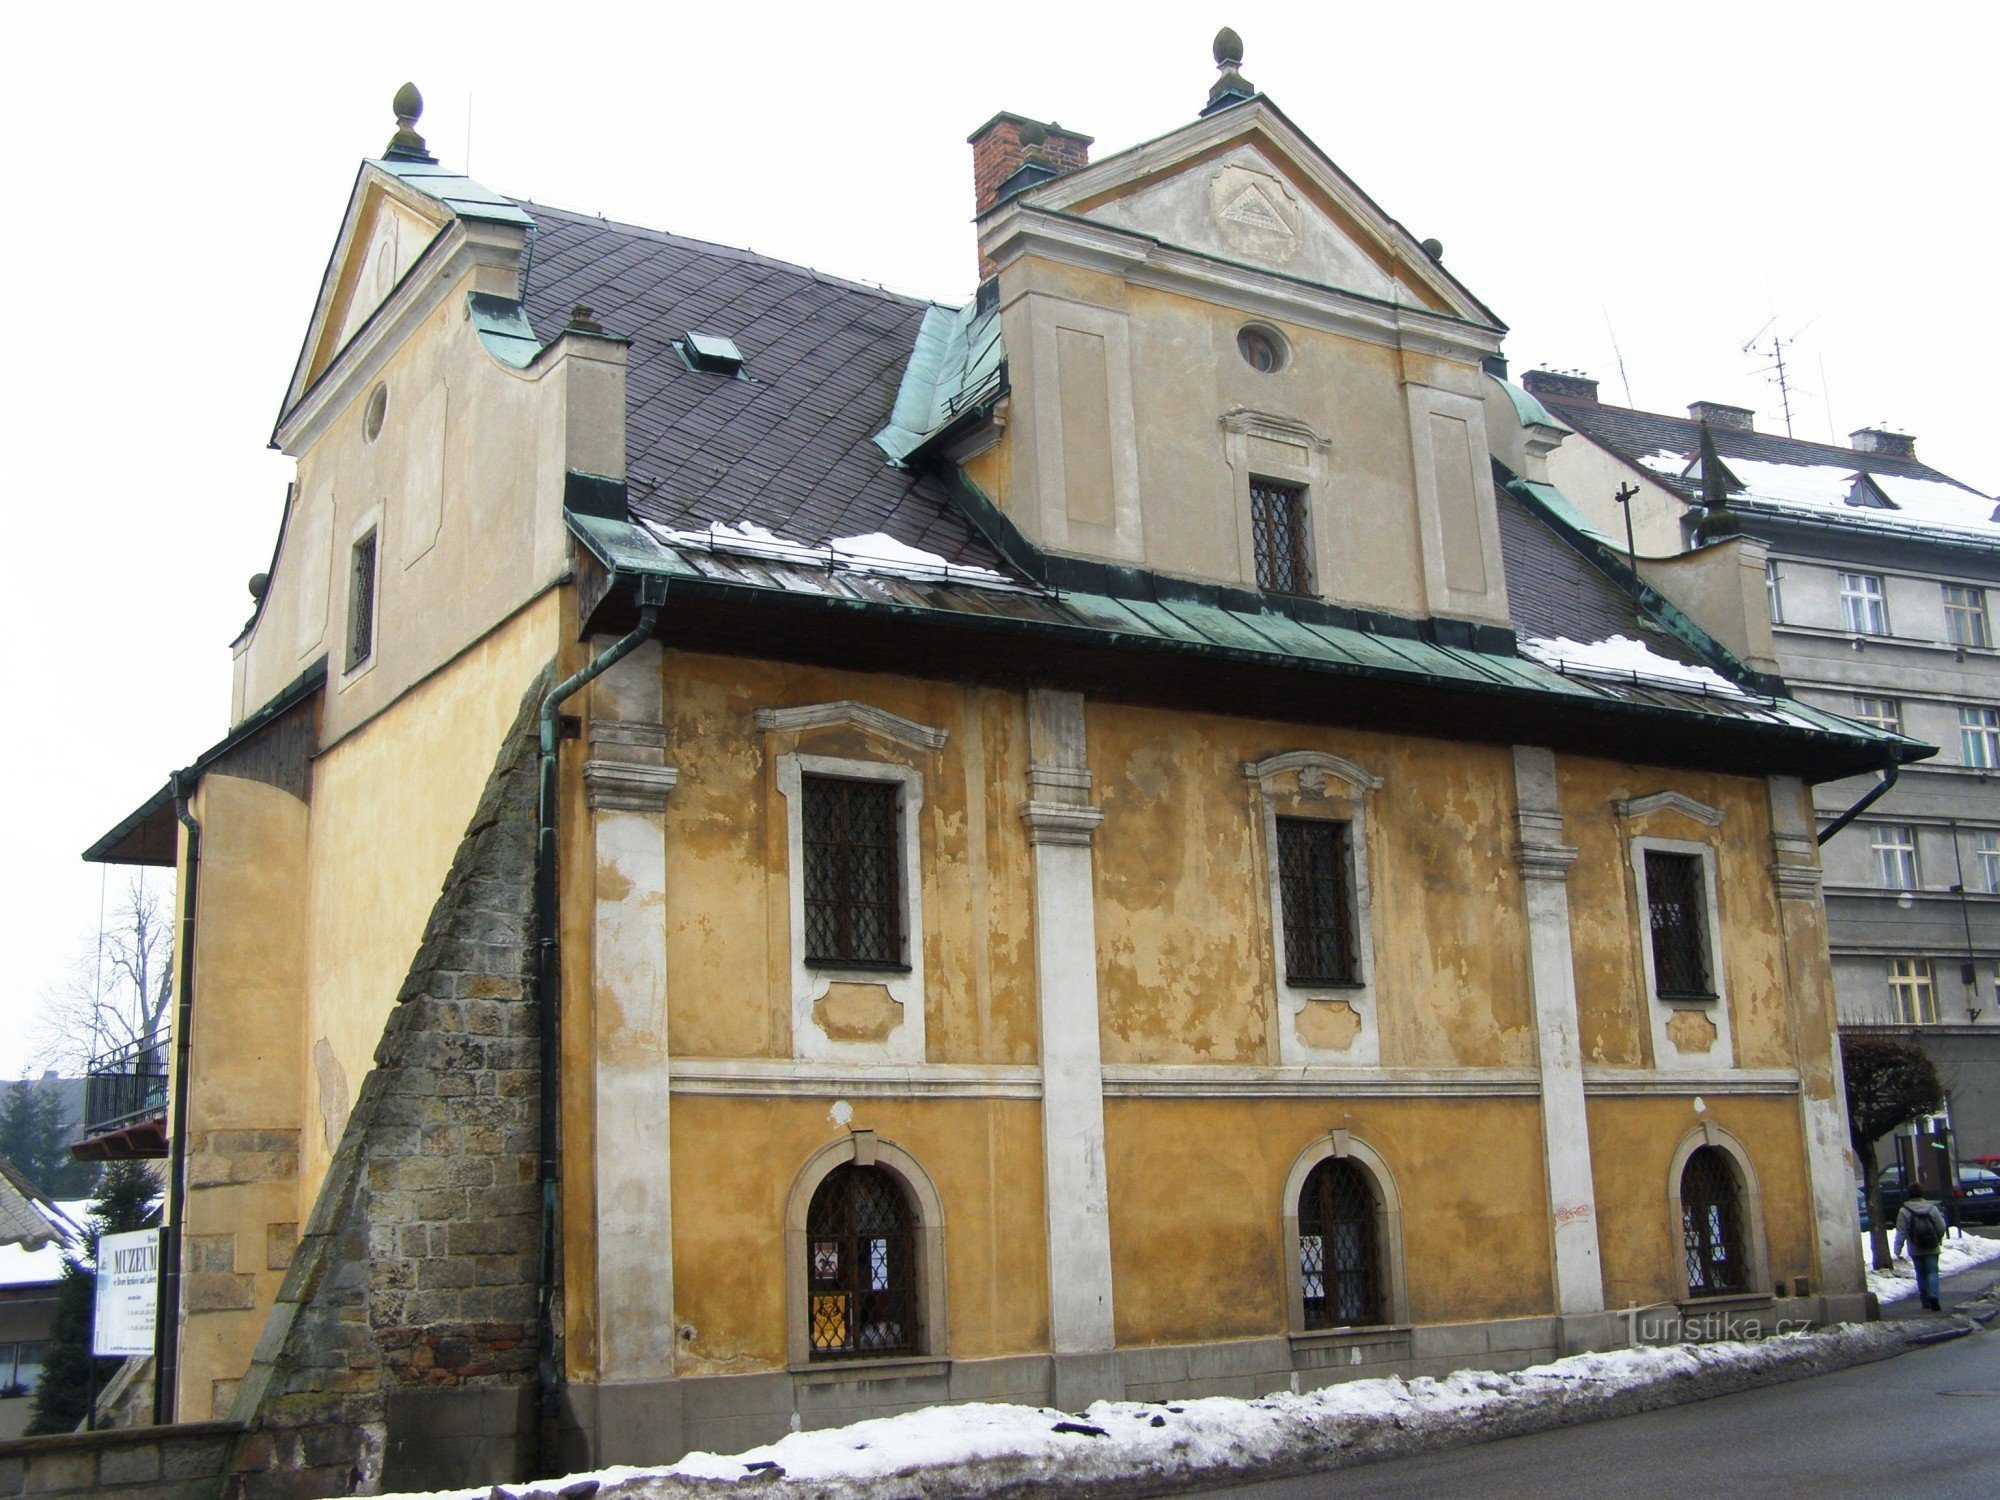 Dvůr Králové nad Labem - 博物館、Kohout's (Berger's) の裁判所